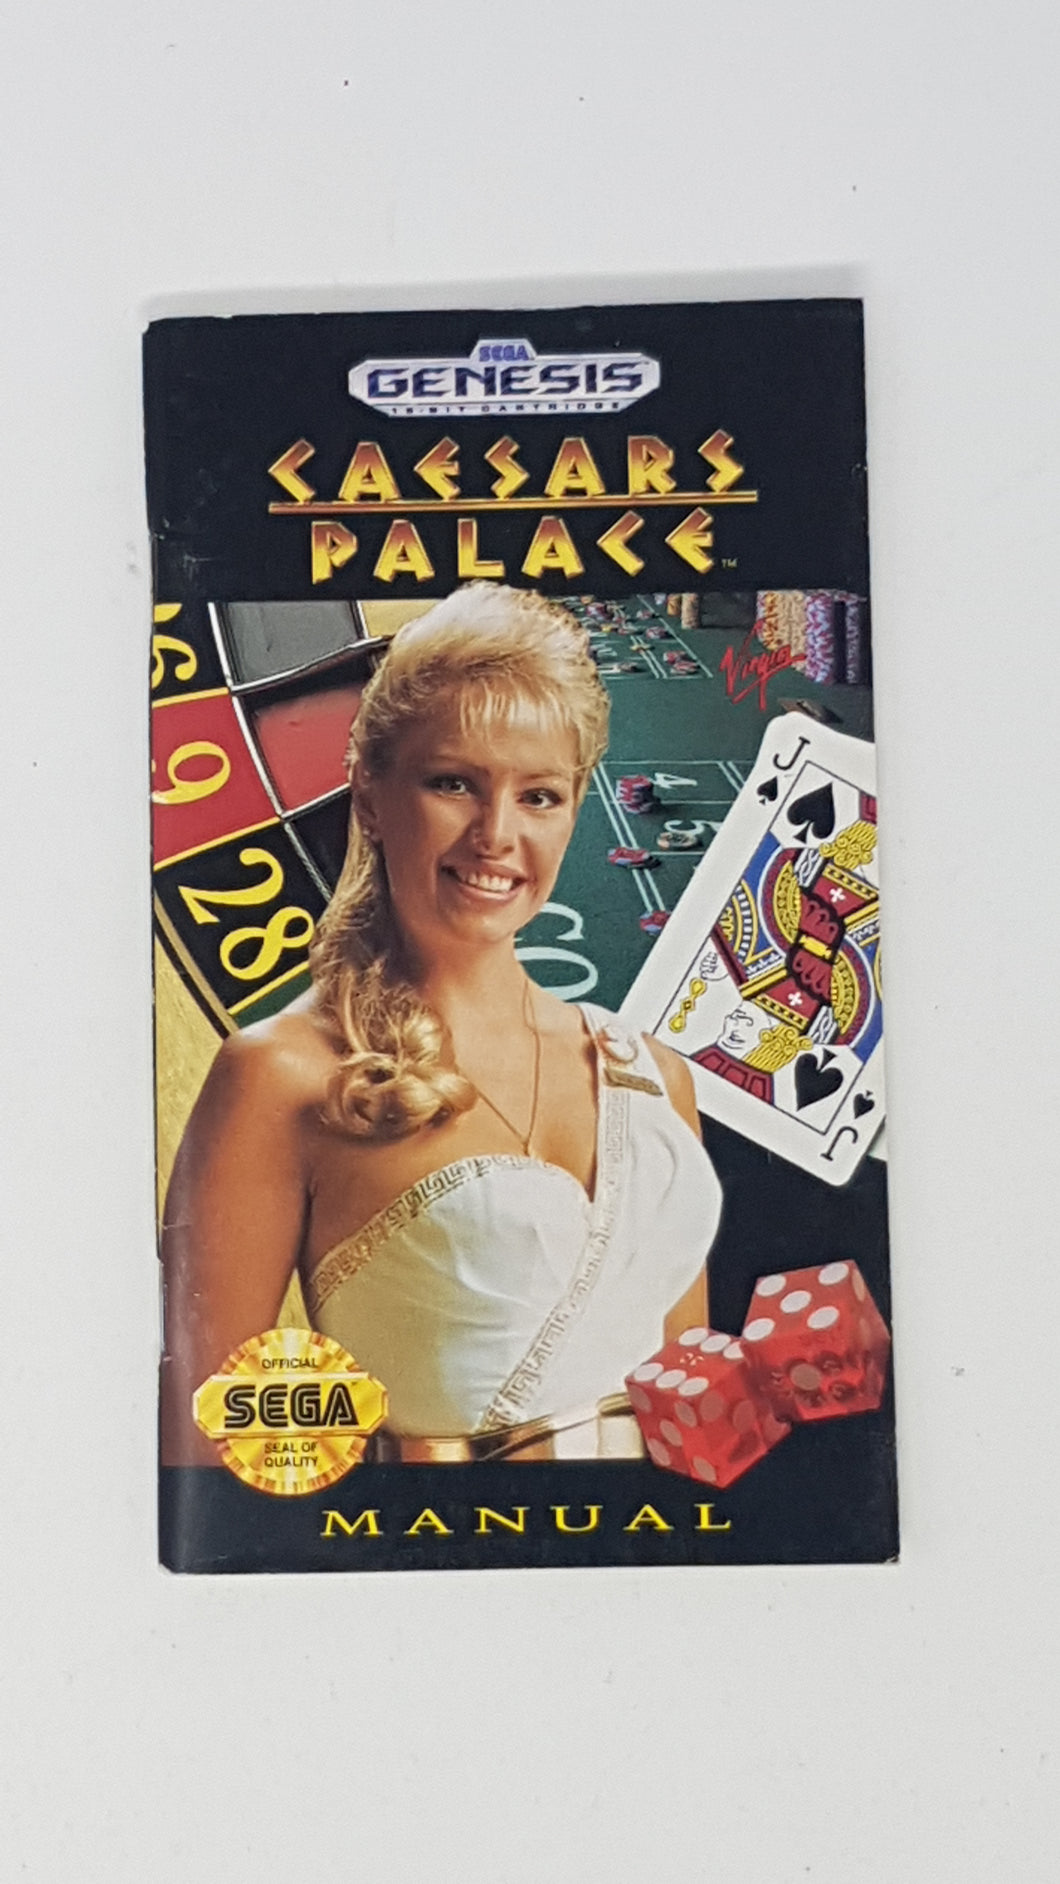 Caesars Palace [manual] - Sega Genesis